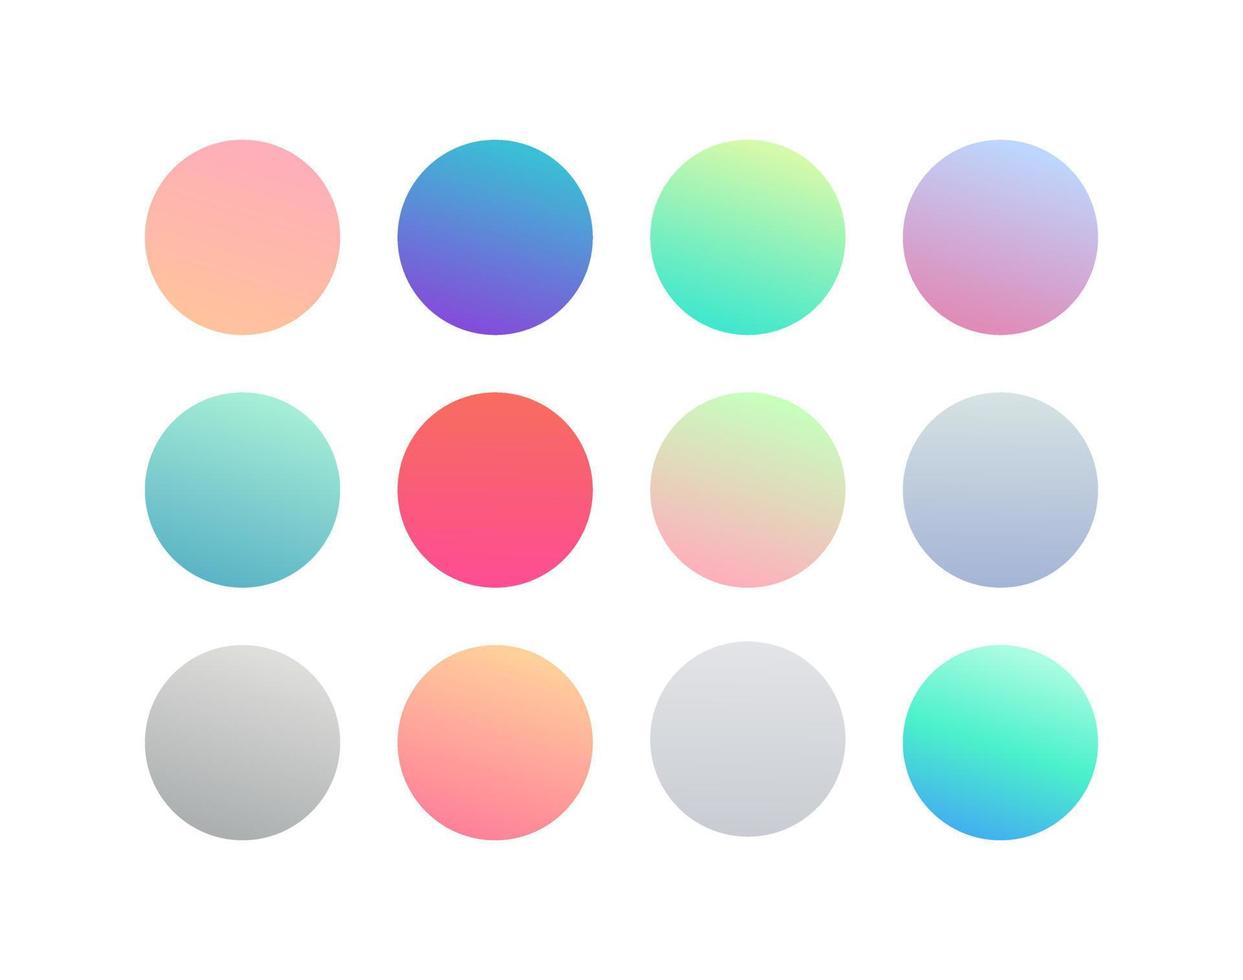 Gradiente redondo de vector de color suave de moda con fondos abstractos modernos. botón de esfera de gradiente holográfico redondeado para web, botones redondos suaves coloridos o vector plano de esferas de colores vivos.